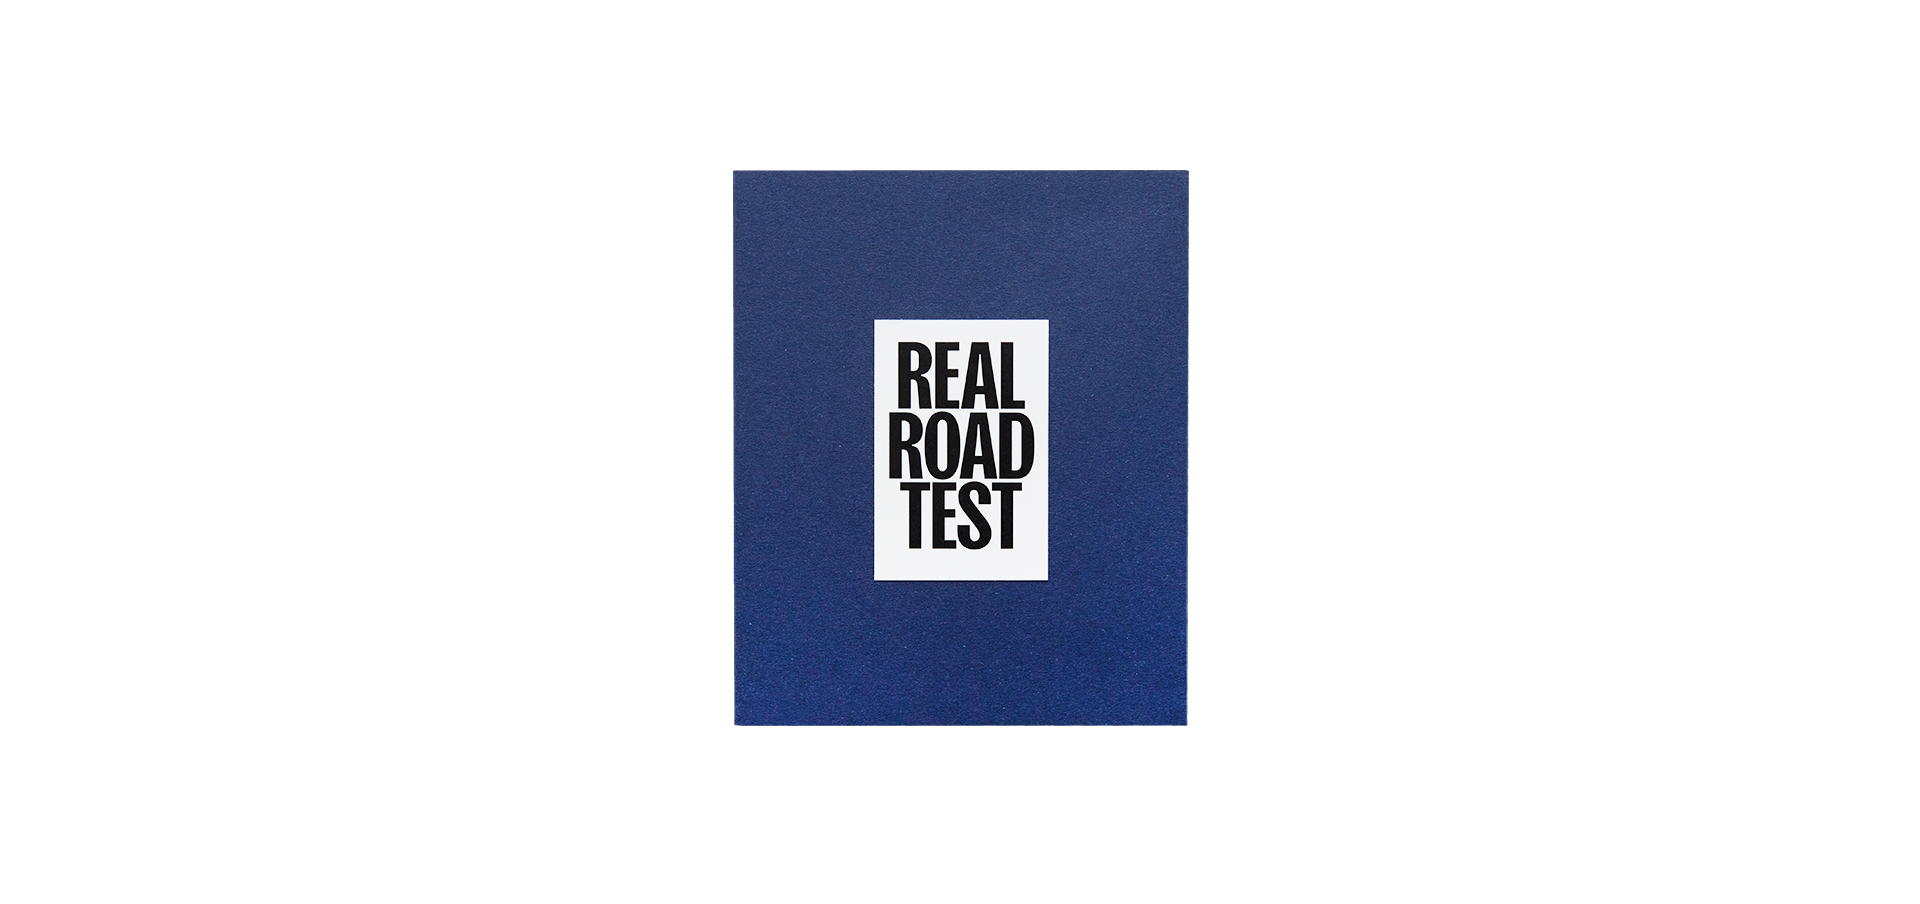 Real Road Test - Édition limitée